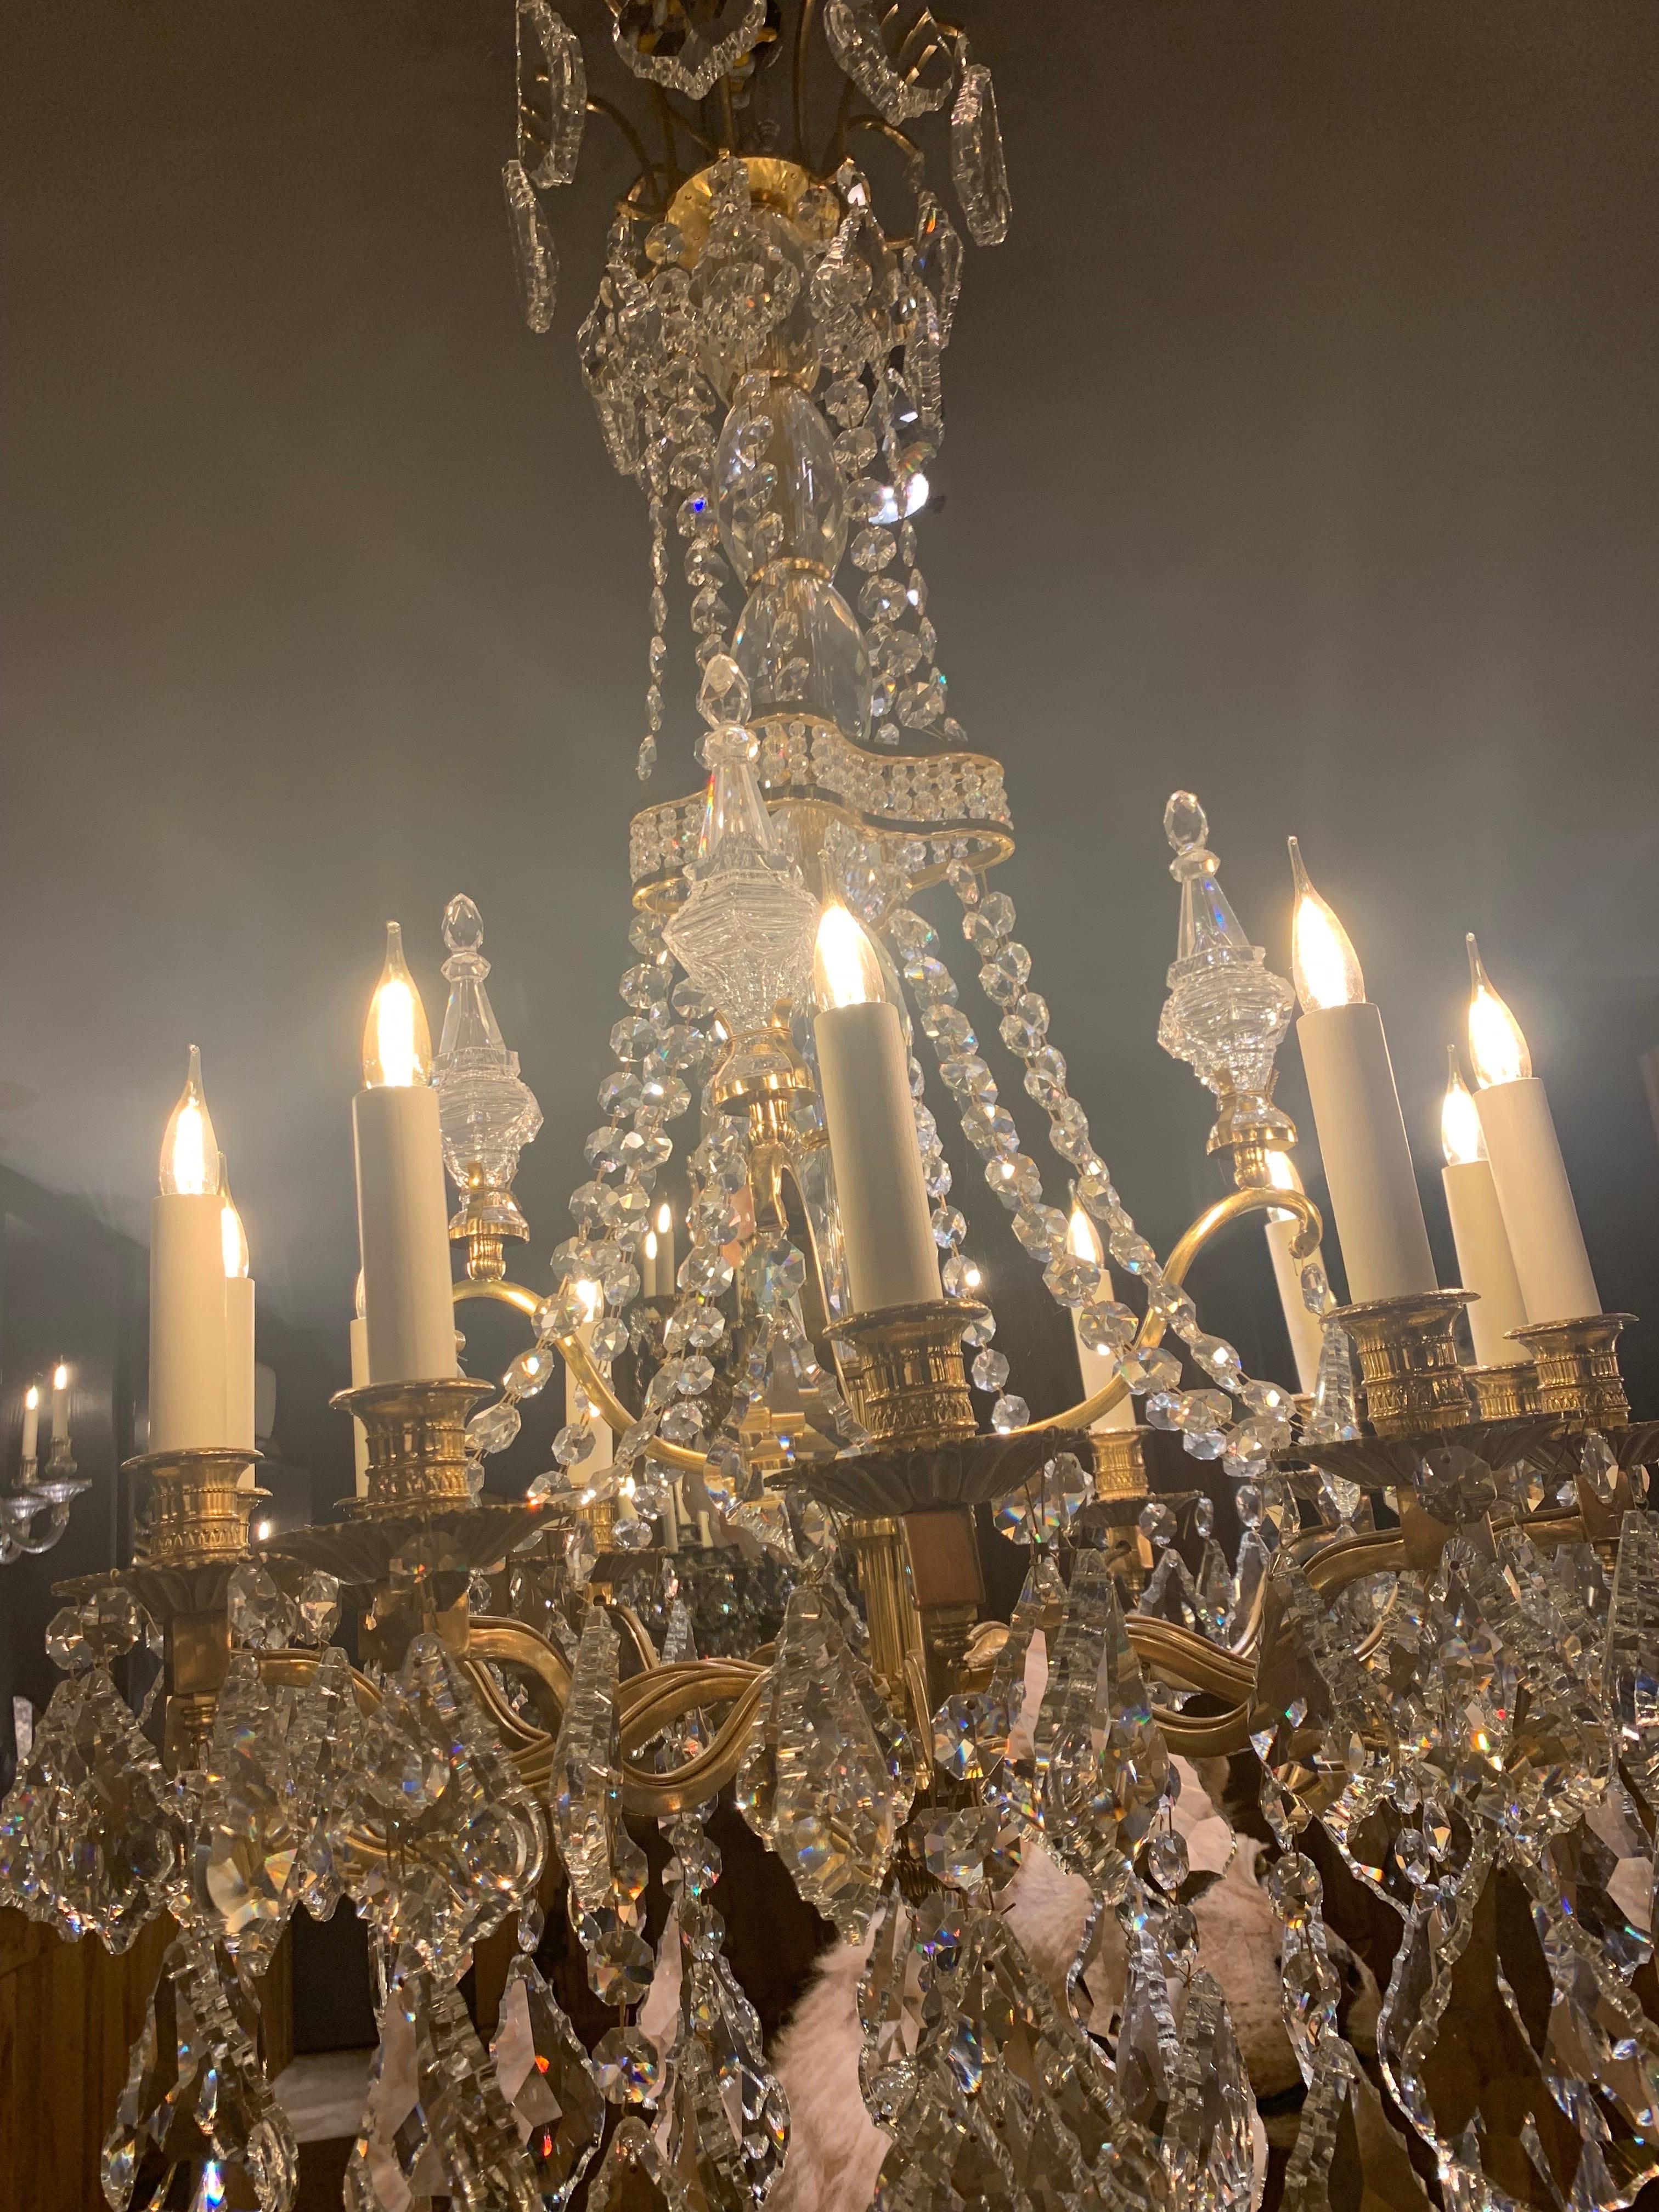 Magnifique lustre galerie de style louis XIV à 12 bras de lumières en bronze doré 18 carats. 
Le lustre est décoré de pendentifs en cristal et de pièces en cristal taillé.

Nous avons un lustre en stock mais nous pouvons les produire sur mesure